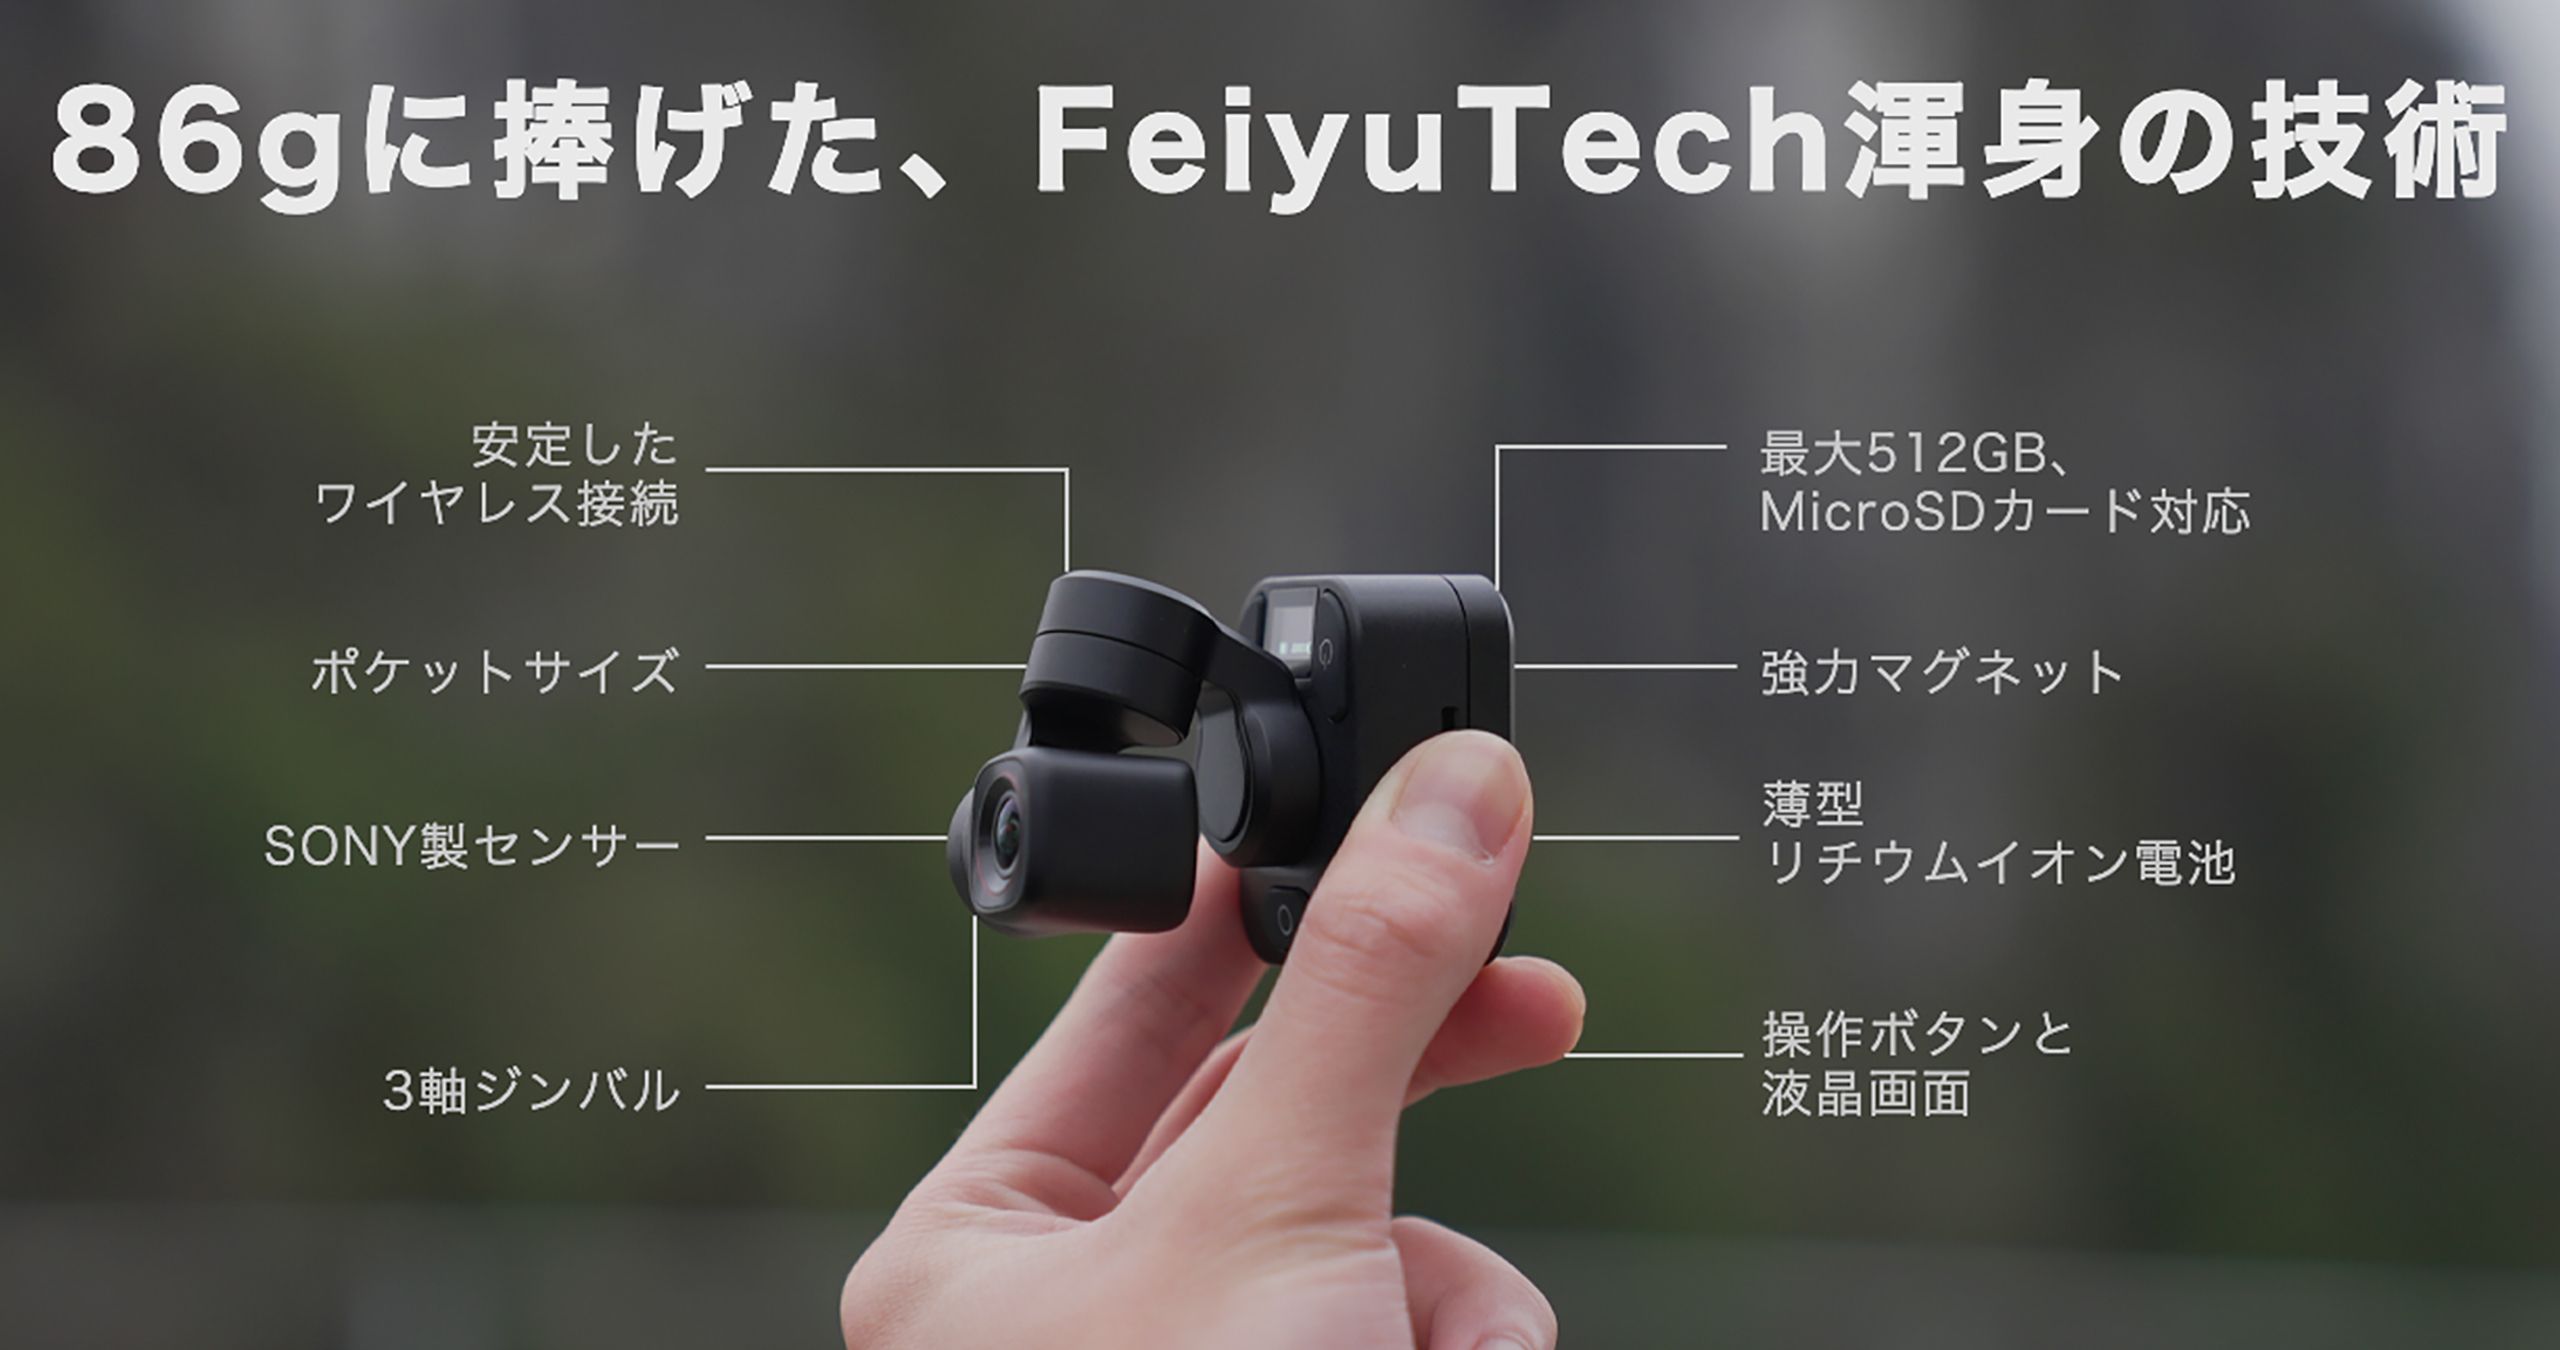 動画の限界をぶち破る！完全セパレート型ジンバルカメラFeiyu Pocket 3 